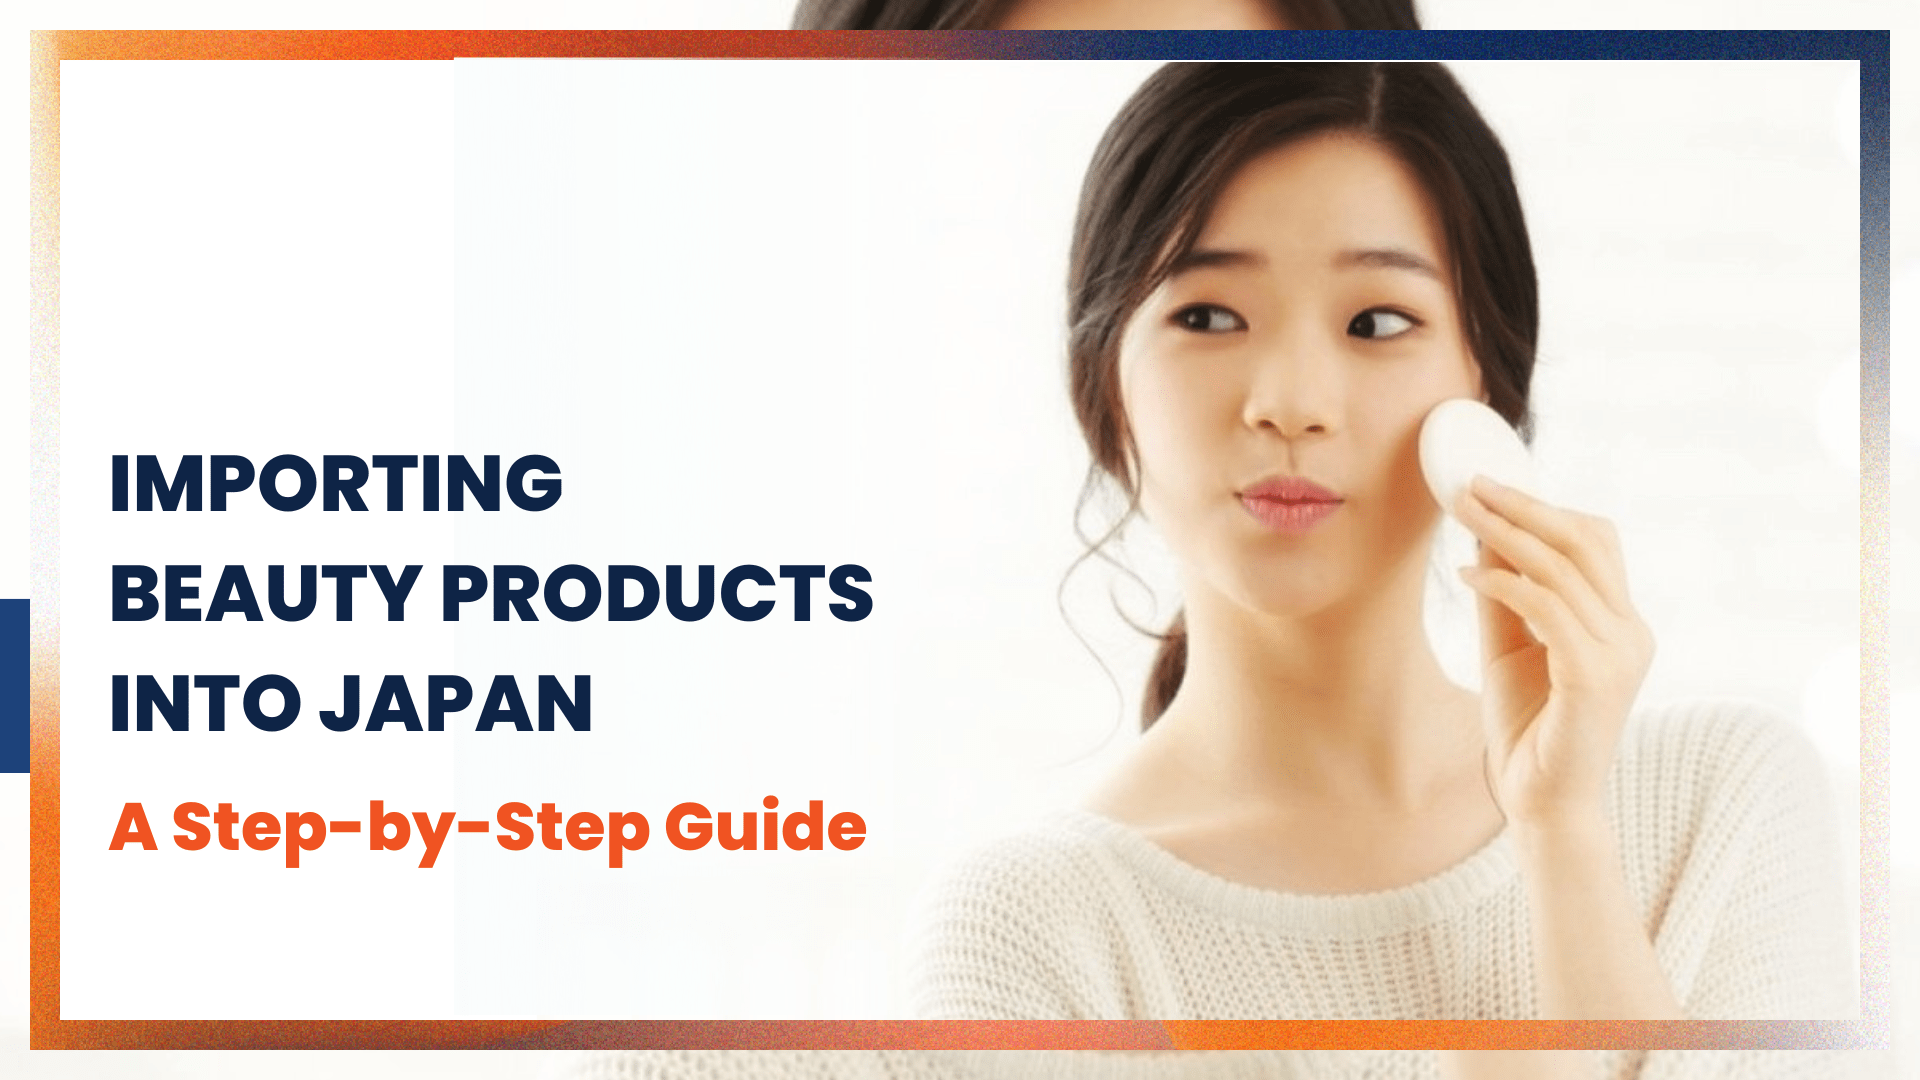 일본으로 미용 제품을 수입하는 방법: 단계별 가이드 